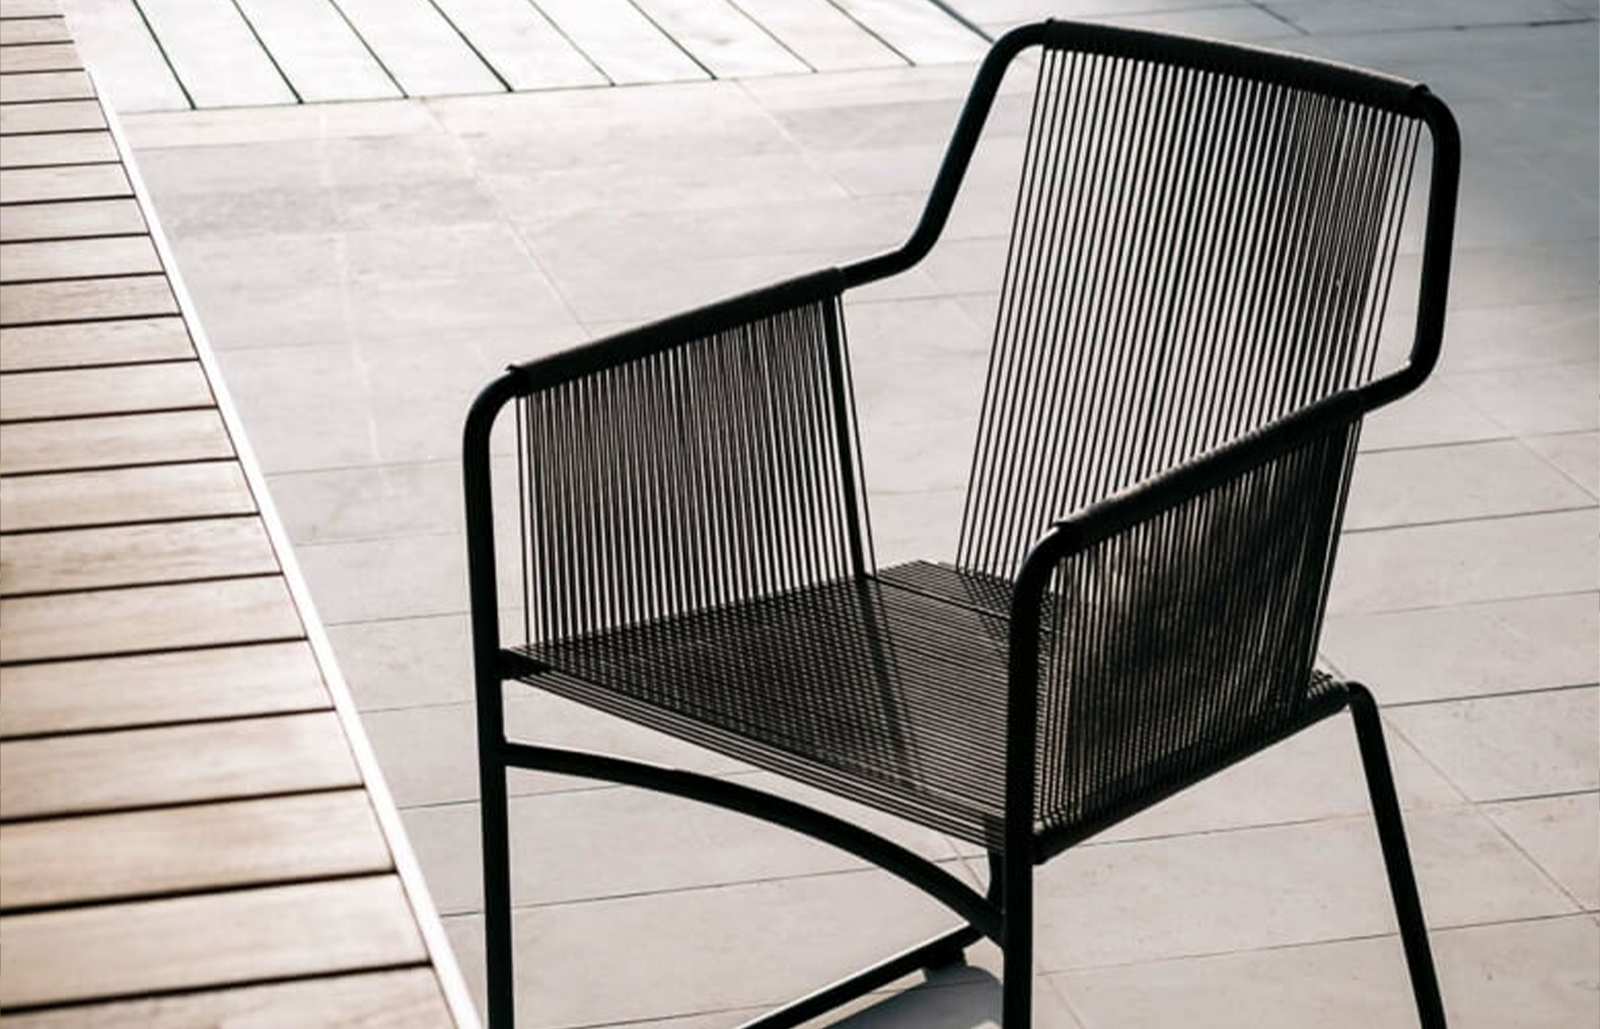 sancilio evotech molfetta - ambientazione outdoor arredo giardino sedie sedute poltrone divani complementi lounge sostenibilità RODA